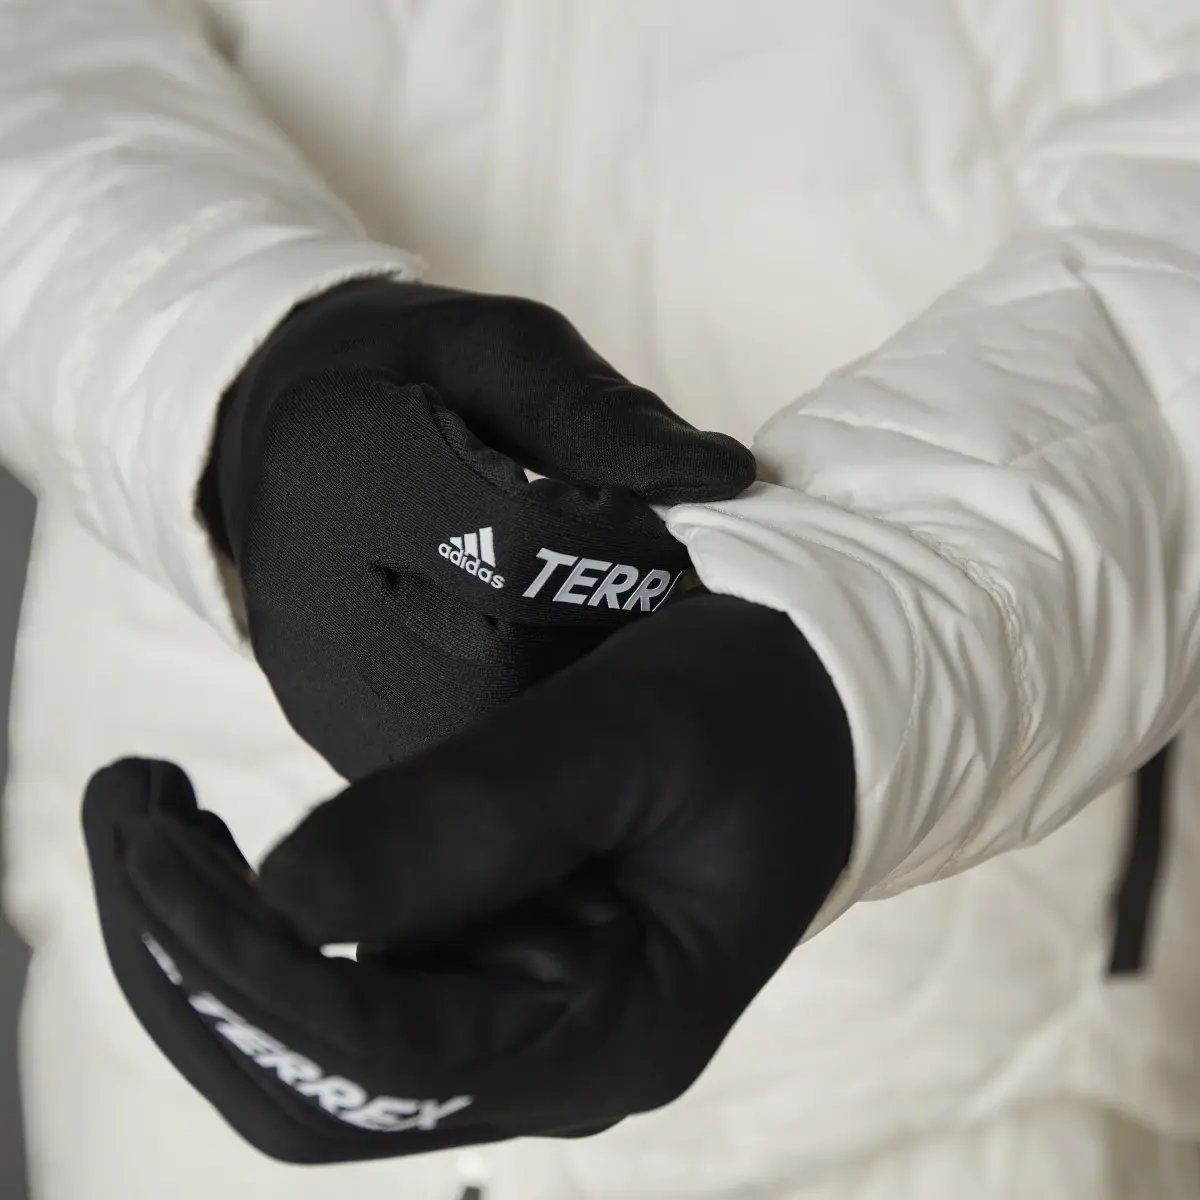 Adidas Terrex MYSHELTER PrimaLoft Hooded Padded Jacket. 2